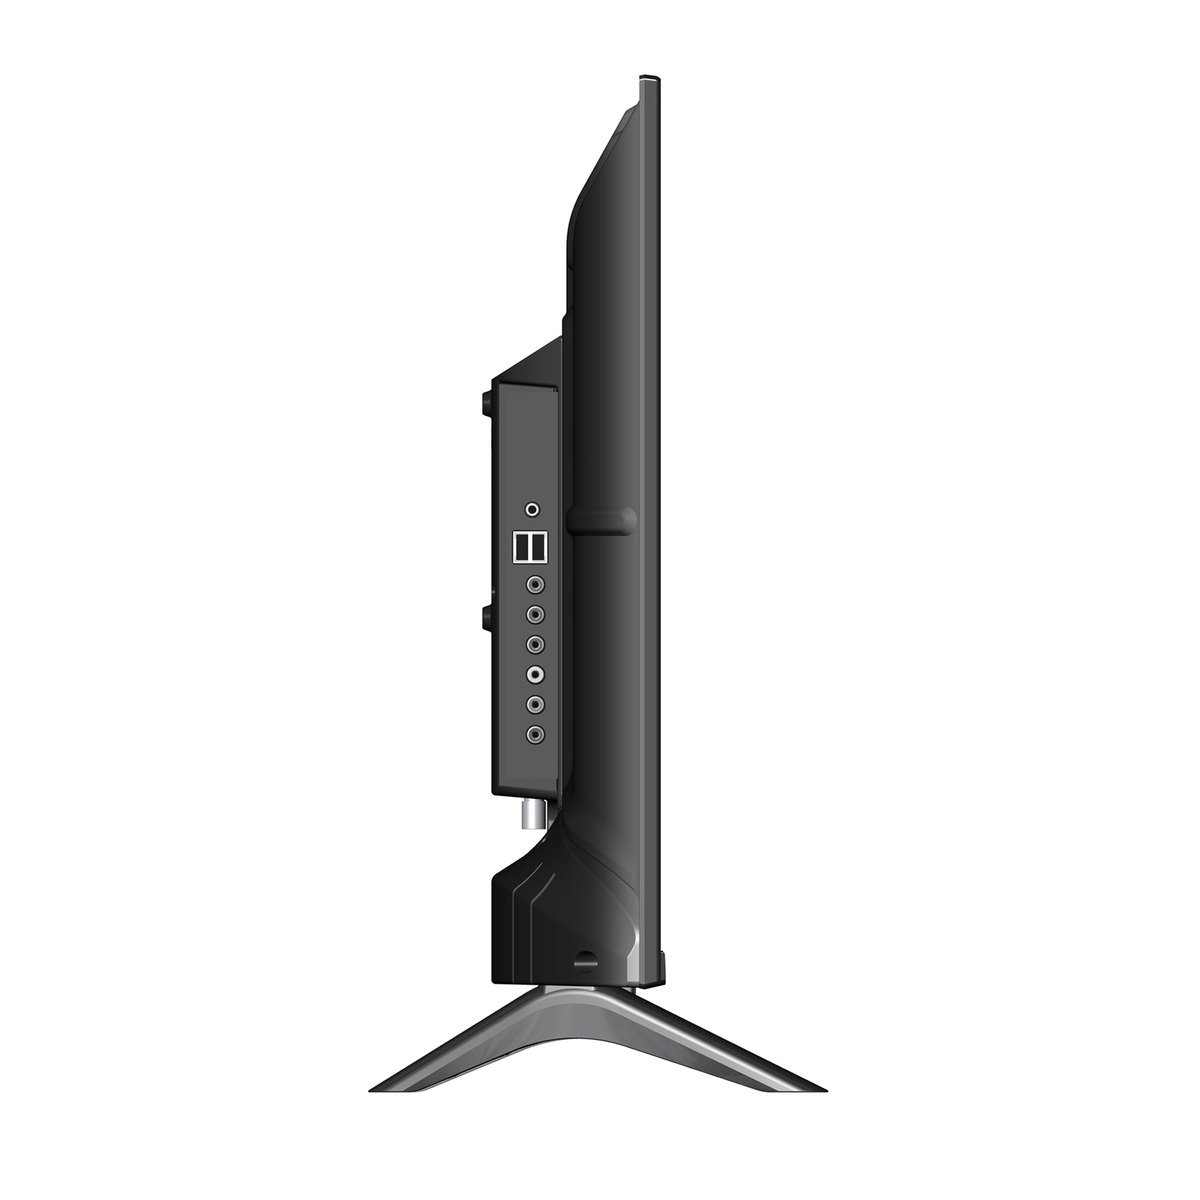 Ikon 32 inches HD Smart LED TV, Black, IK-VS32